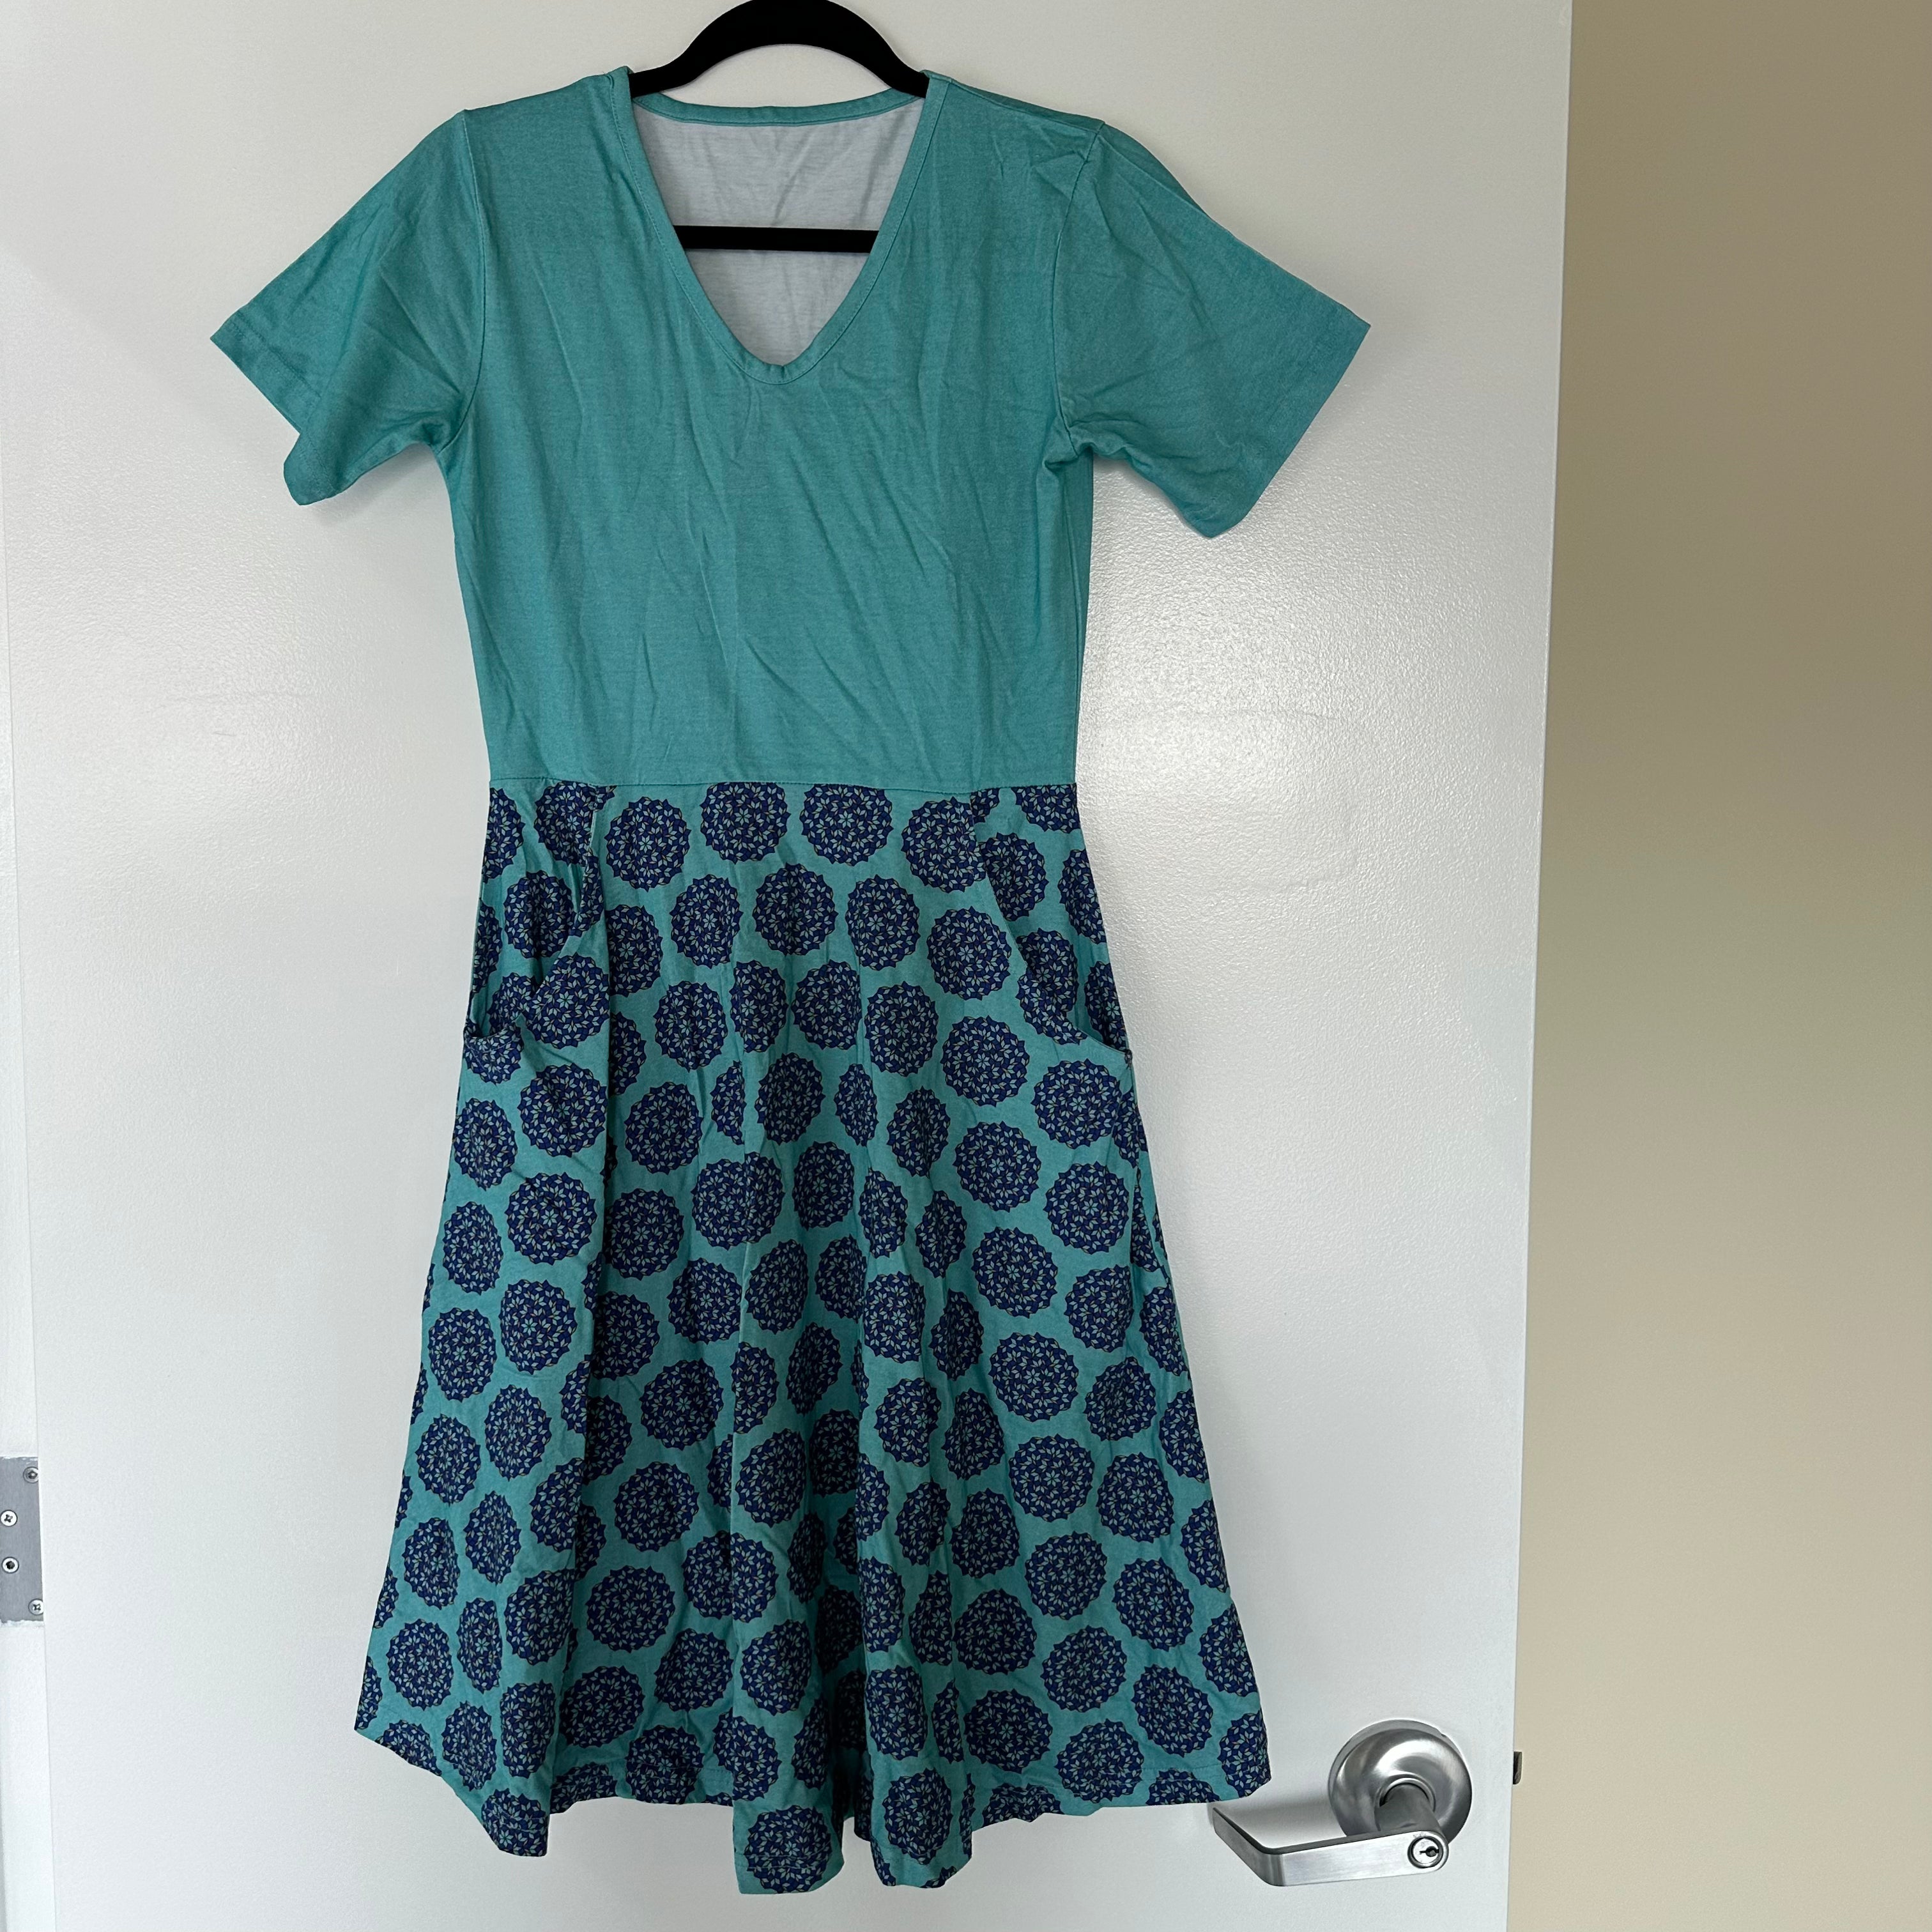 Penrose Tiling Adults Dress Sample (Light Blue Top) - XS